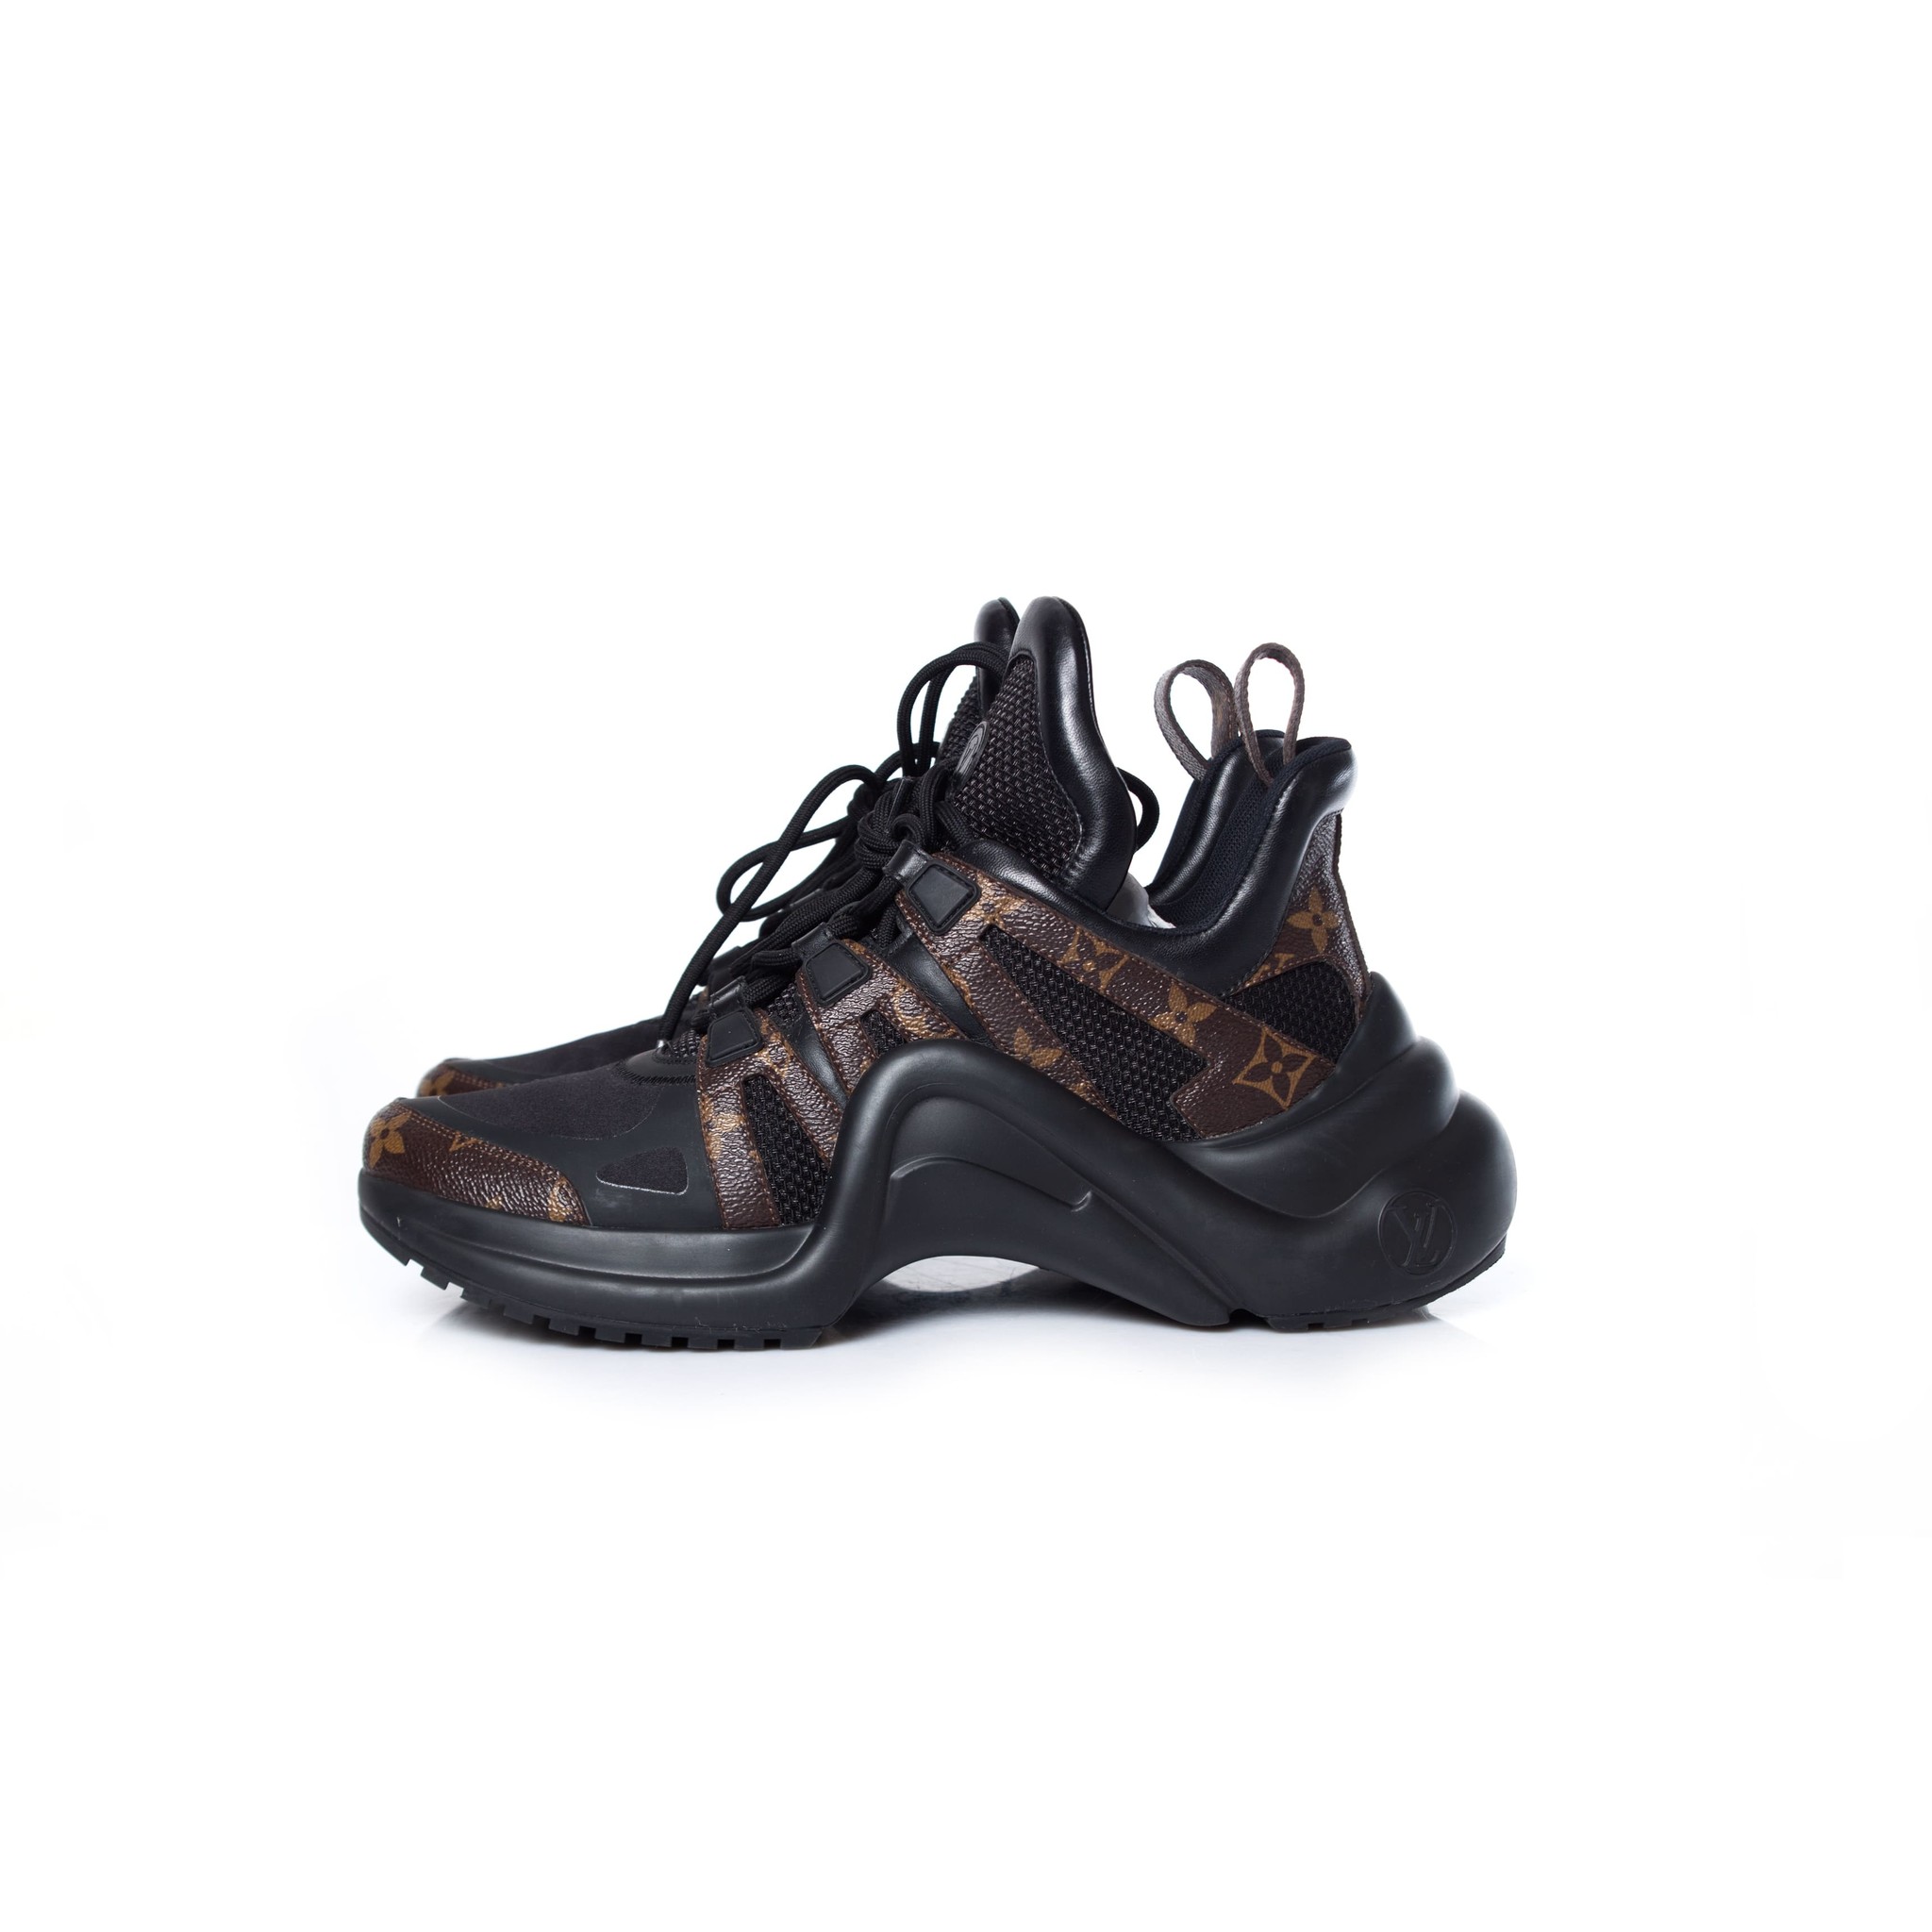 LOUIS VUITTON Calfskin Patent Monogram LV Archlight Sneakers Shoes sz 44EU  11-12